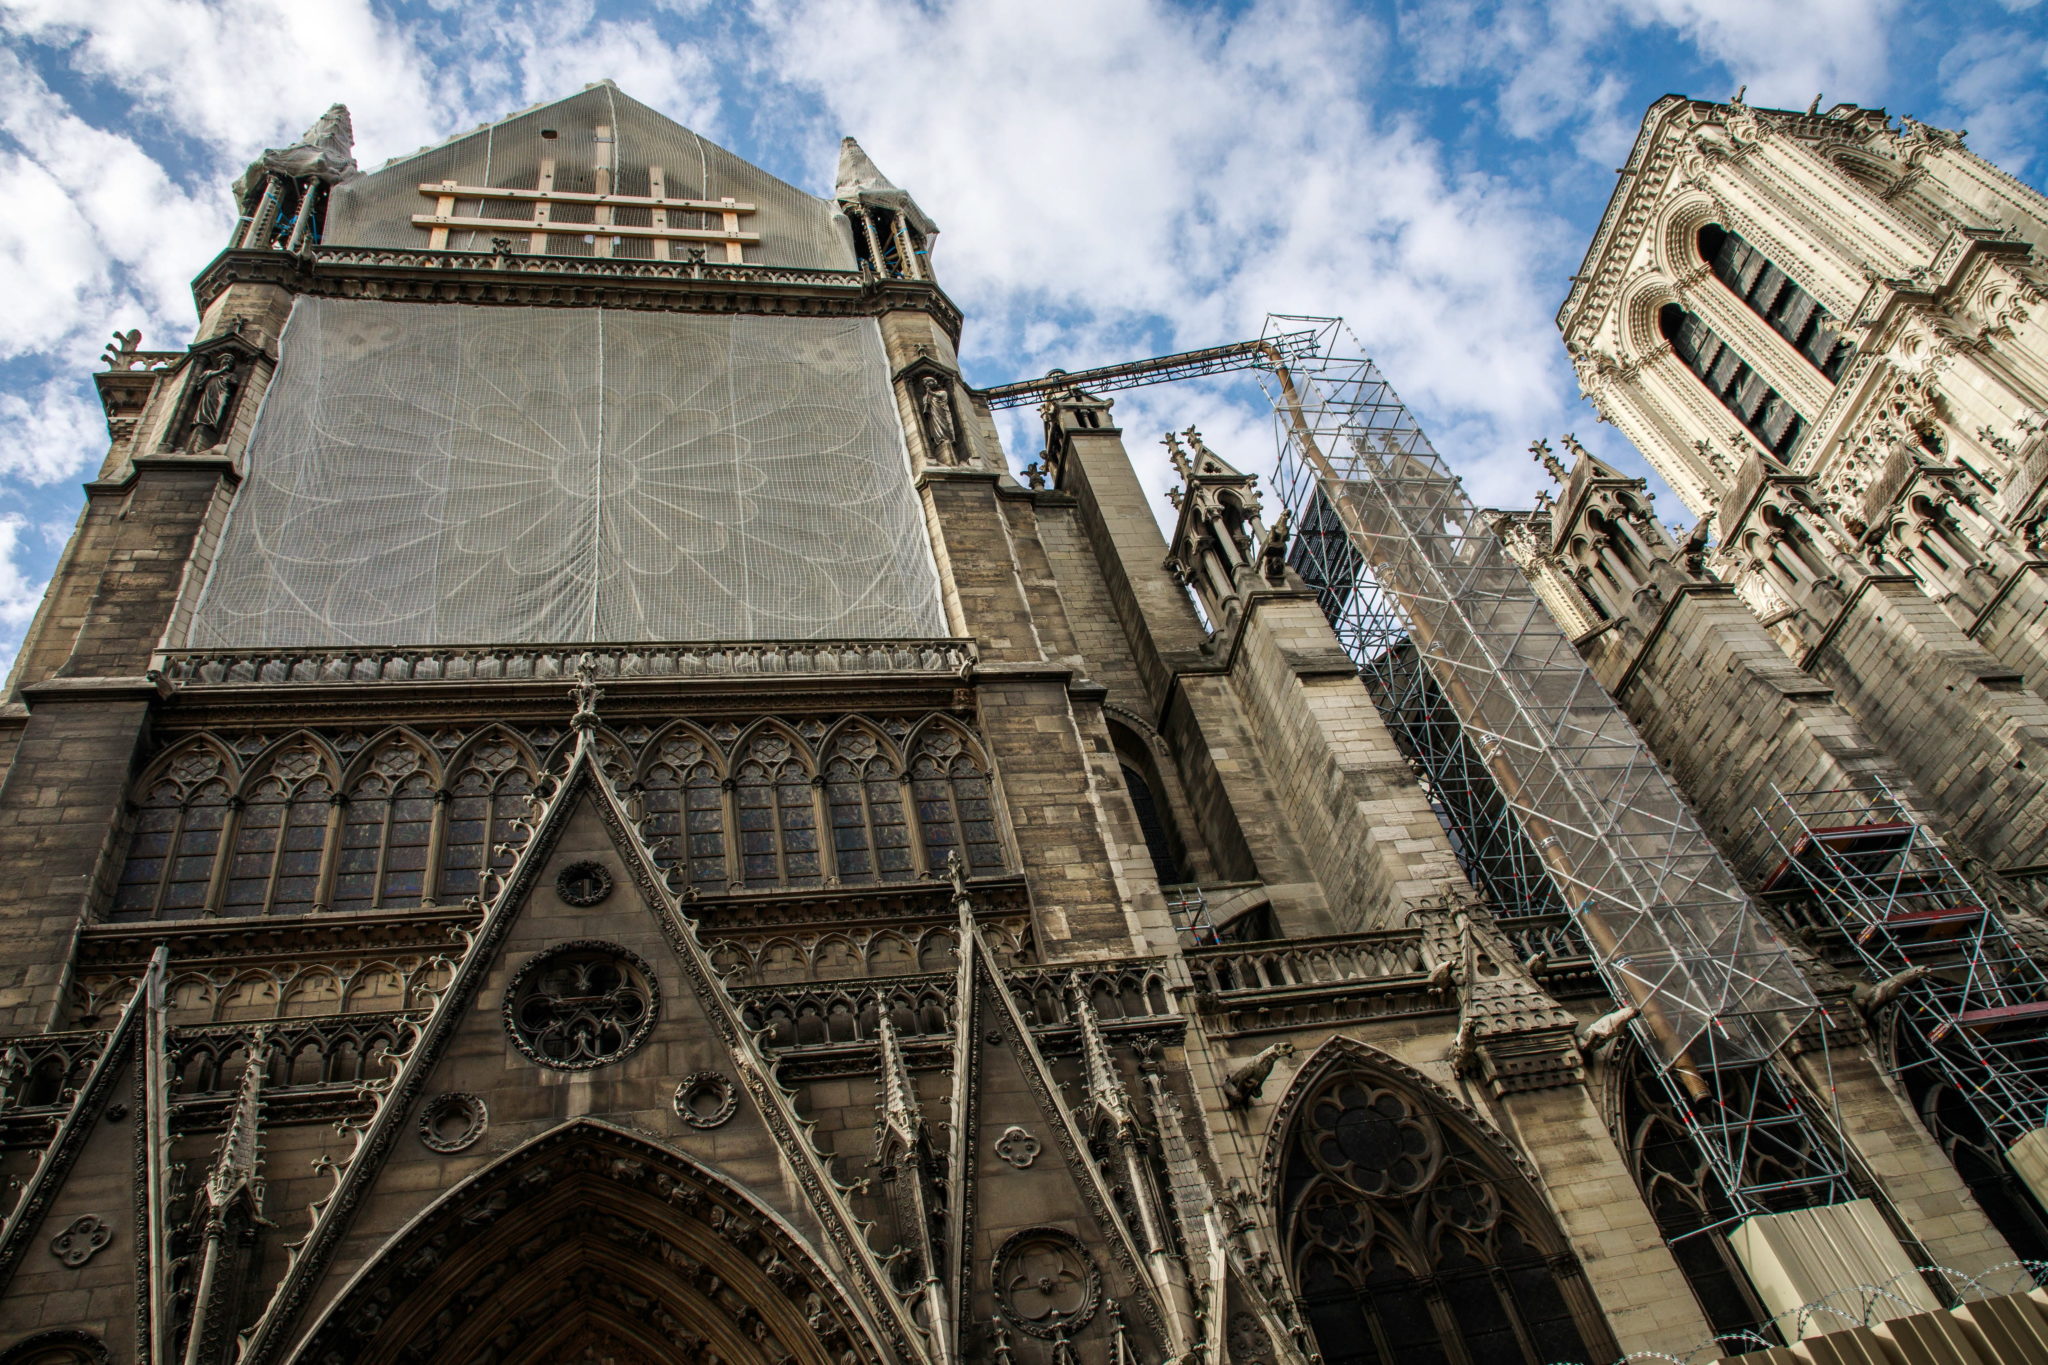 Prace remontowe przy katedrze Notre Dame w Paryżu zostaną wznowione 12 sierpnia. Przerwano je wcześniej z uwagi na duże skażenie terenu ołowiem. W trakcie tragicznego pożaru katedry, do którego doszło w kwietniu, stopieniu uległo blisko 100 ton ołowiu, fot. CHRISTOPHE PETIT TESSON Dostawca: PAP/EPA.